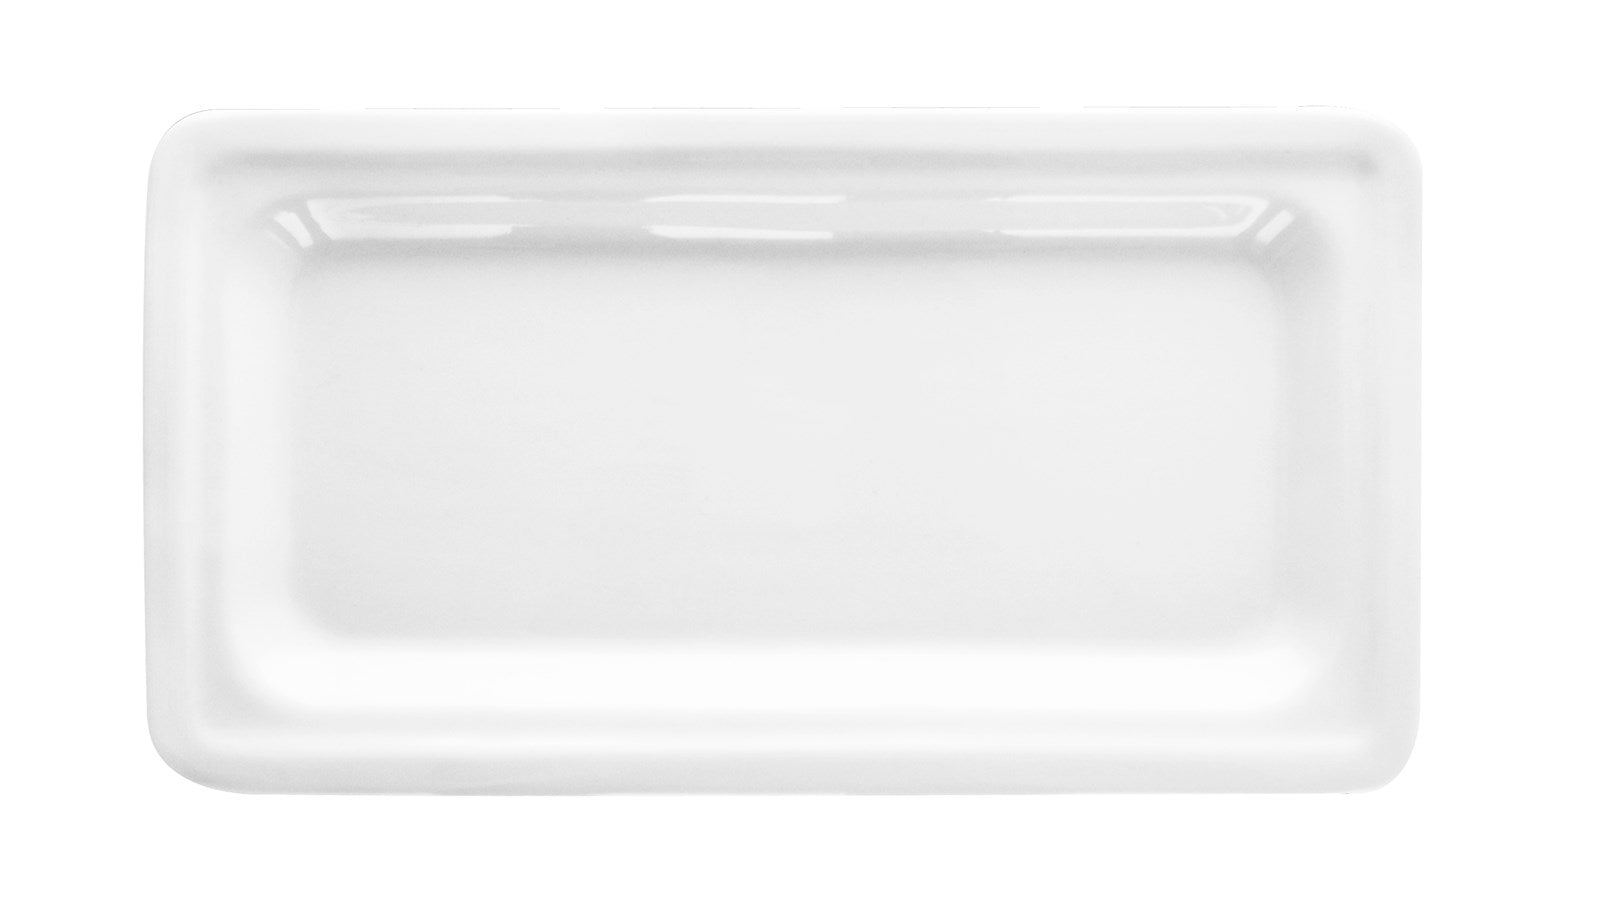 Buffet GN Schalen Porzellan 1/3 32.5x17.6cm H2.5cm in Weiss präsentiert im Onlineshop von KAQTU Design AG. Schale ist von Diverse